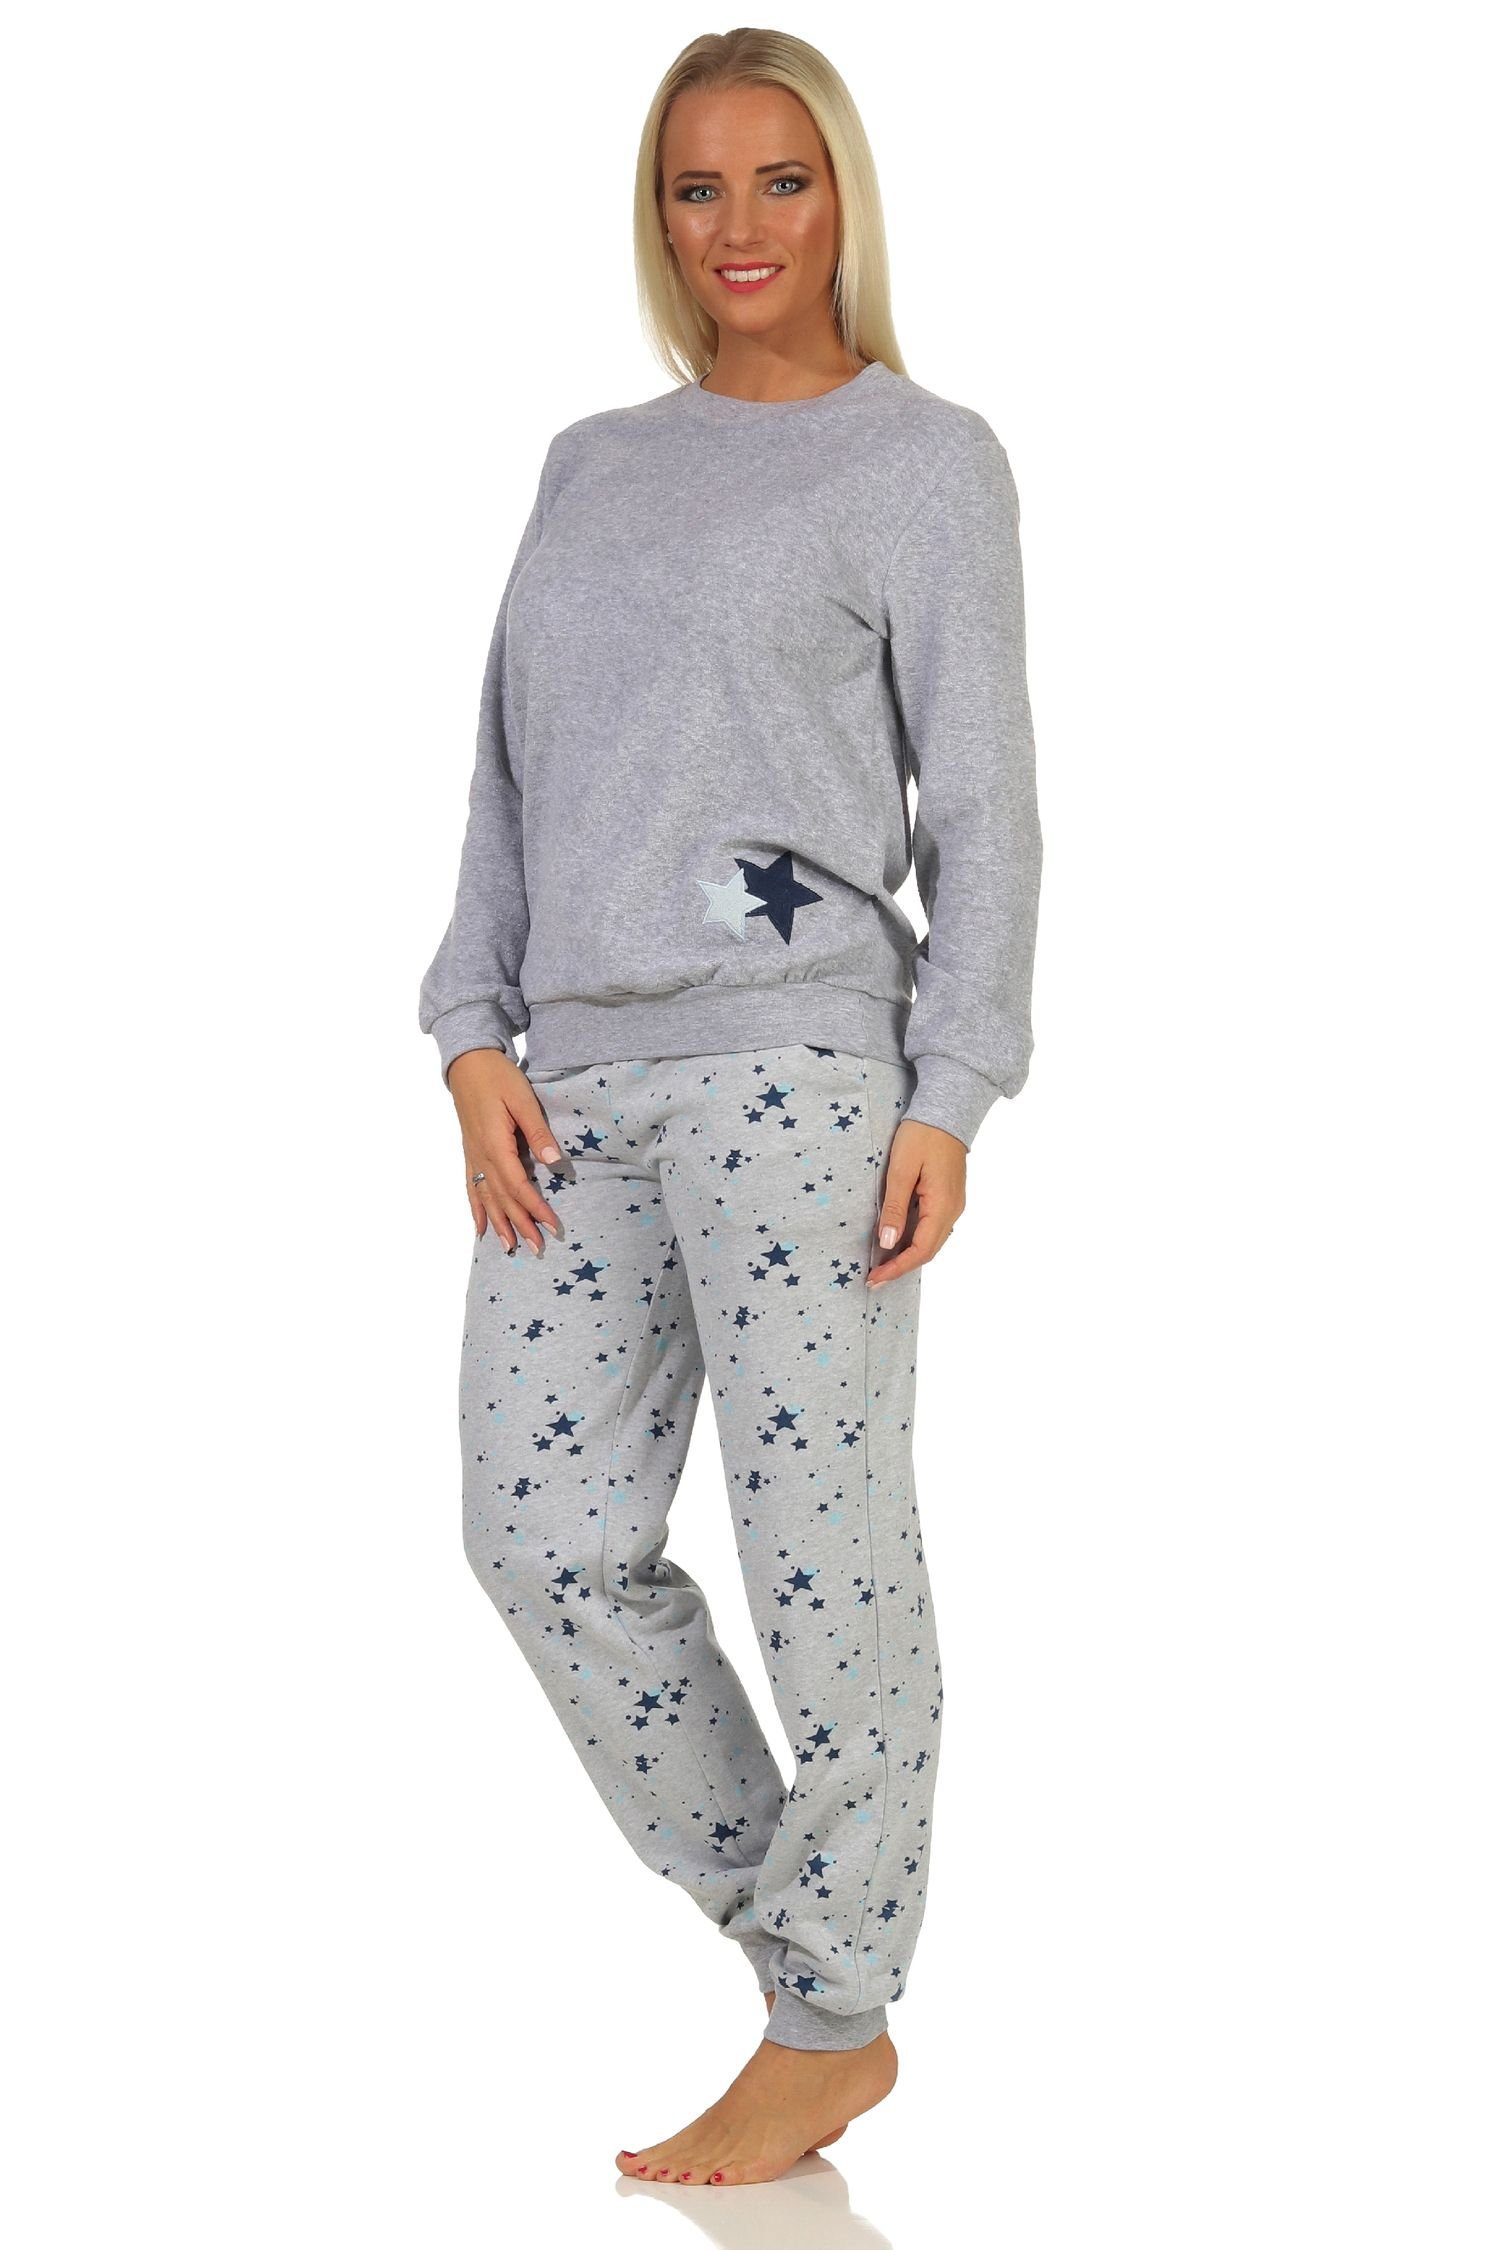 Übergröße mit Pyjama als Normann Damen Sterne Frottee grau-melange -auch Bündchen in Pyjama Motiv